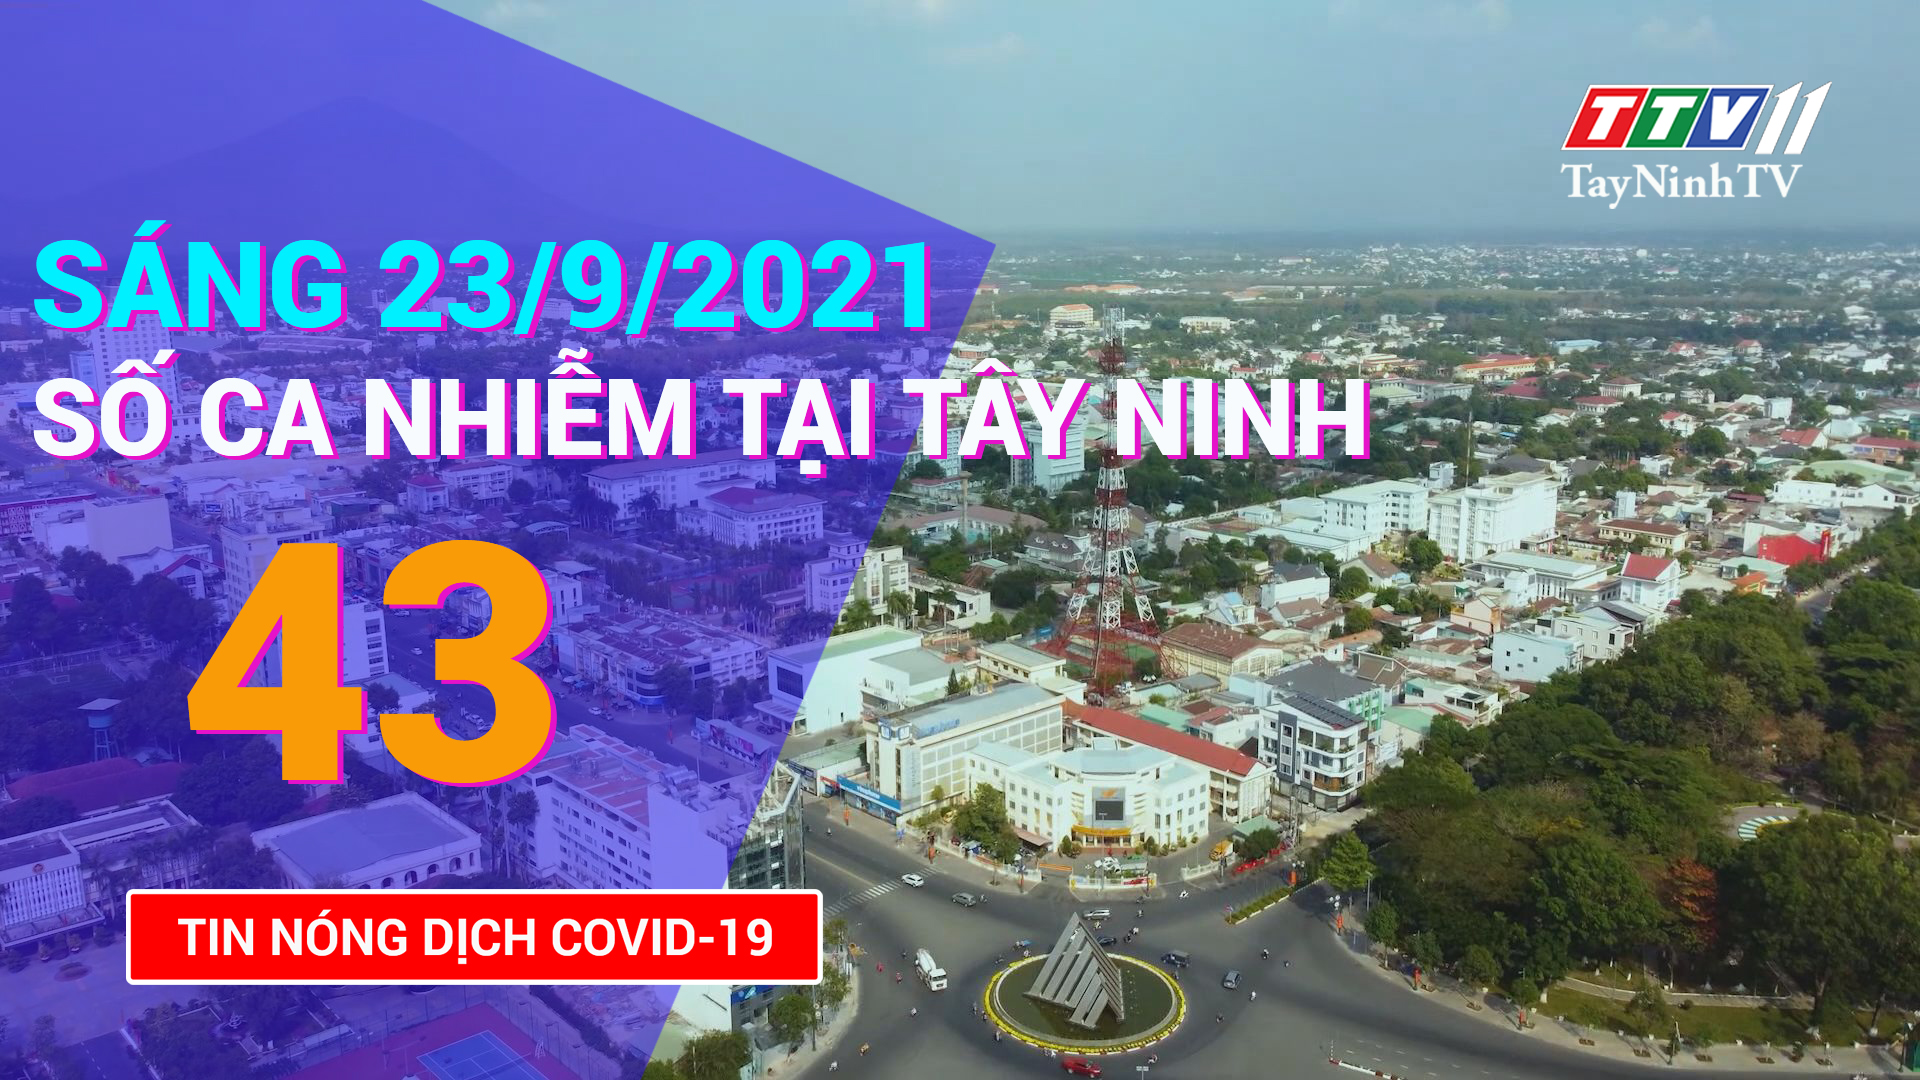 Tin tức Covid-19 sáng 23/9/2021 | TayNinhTV